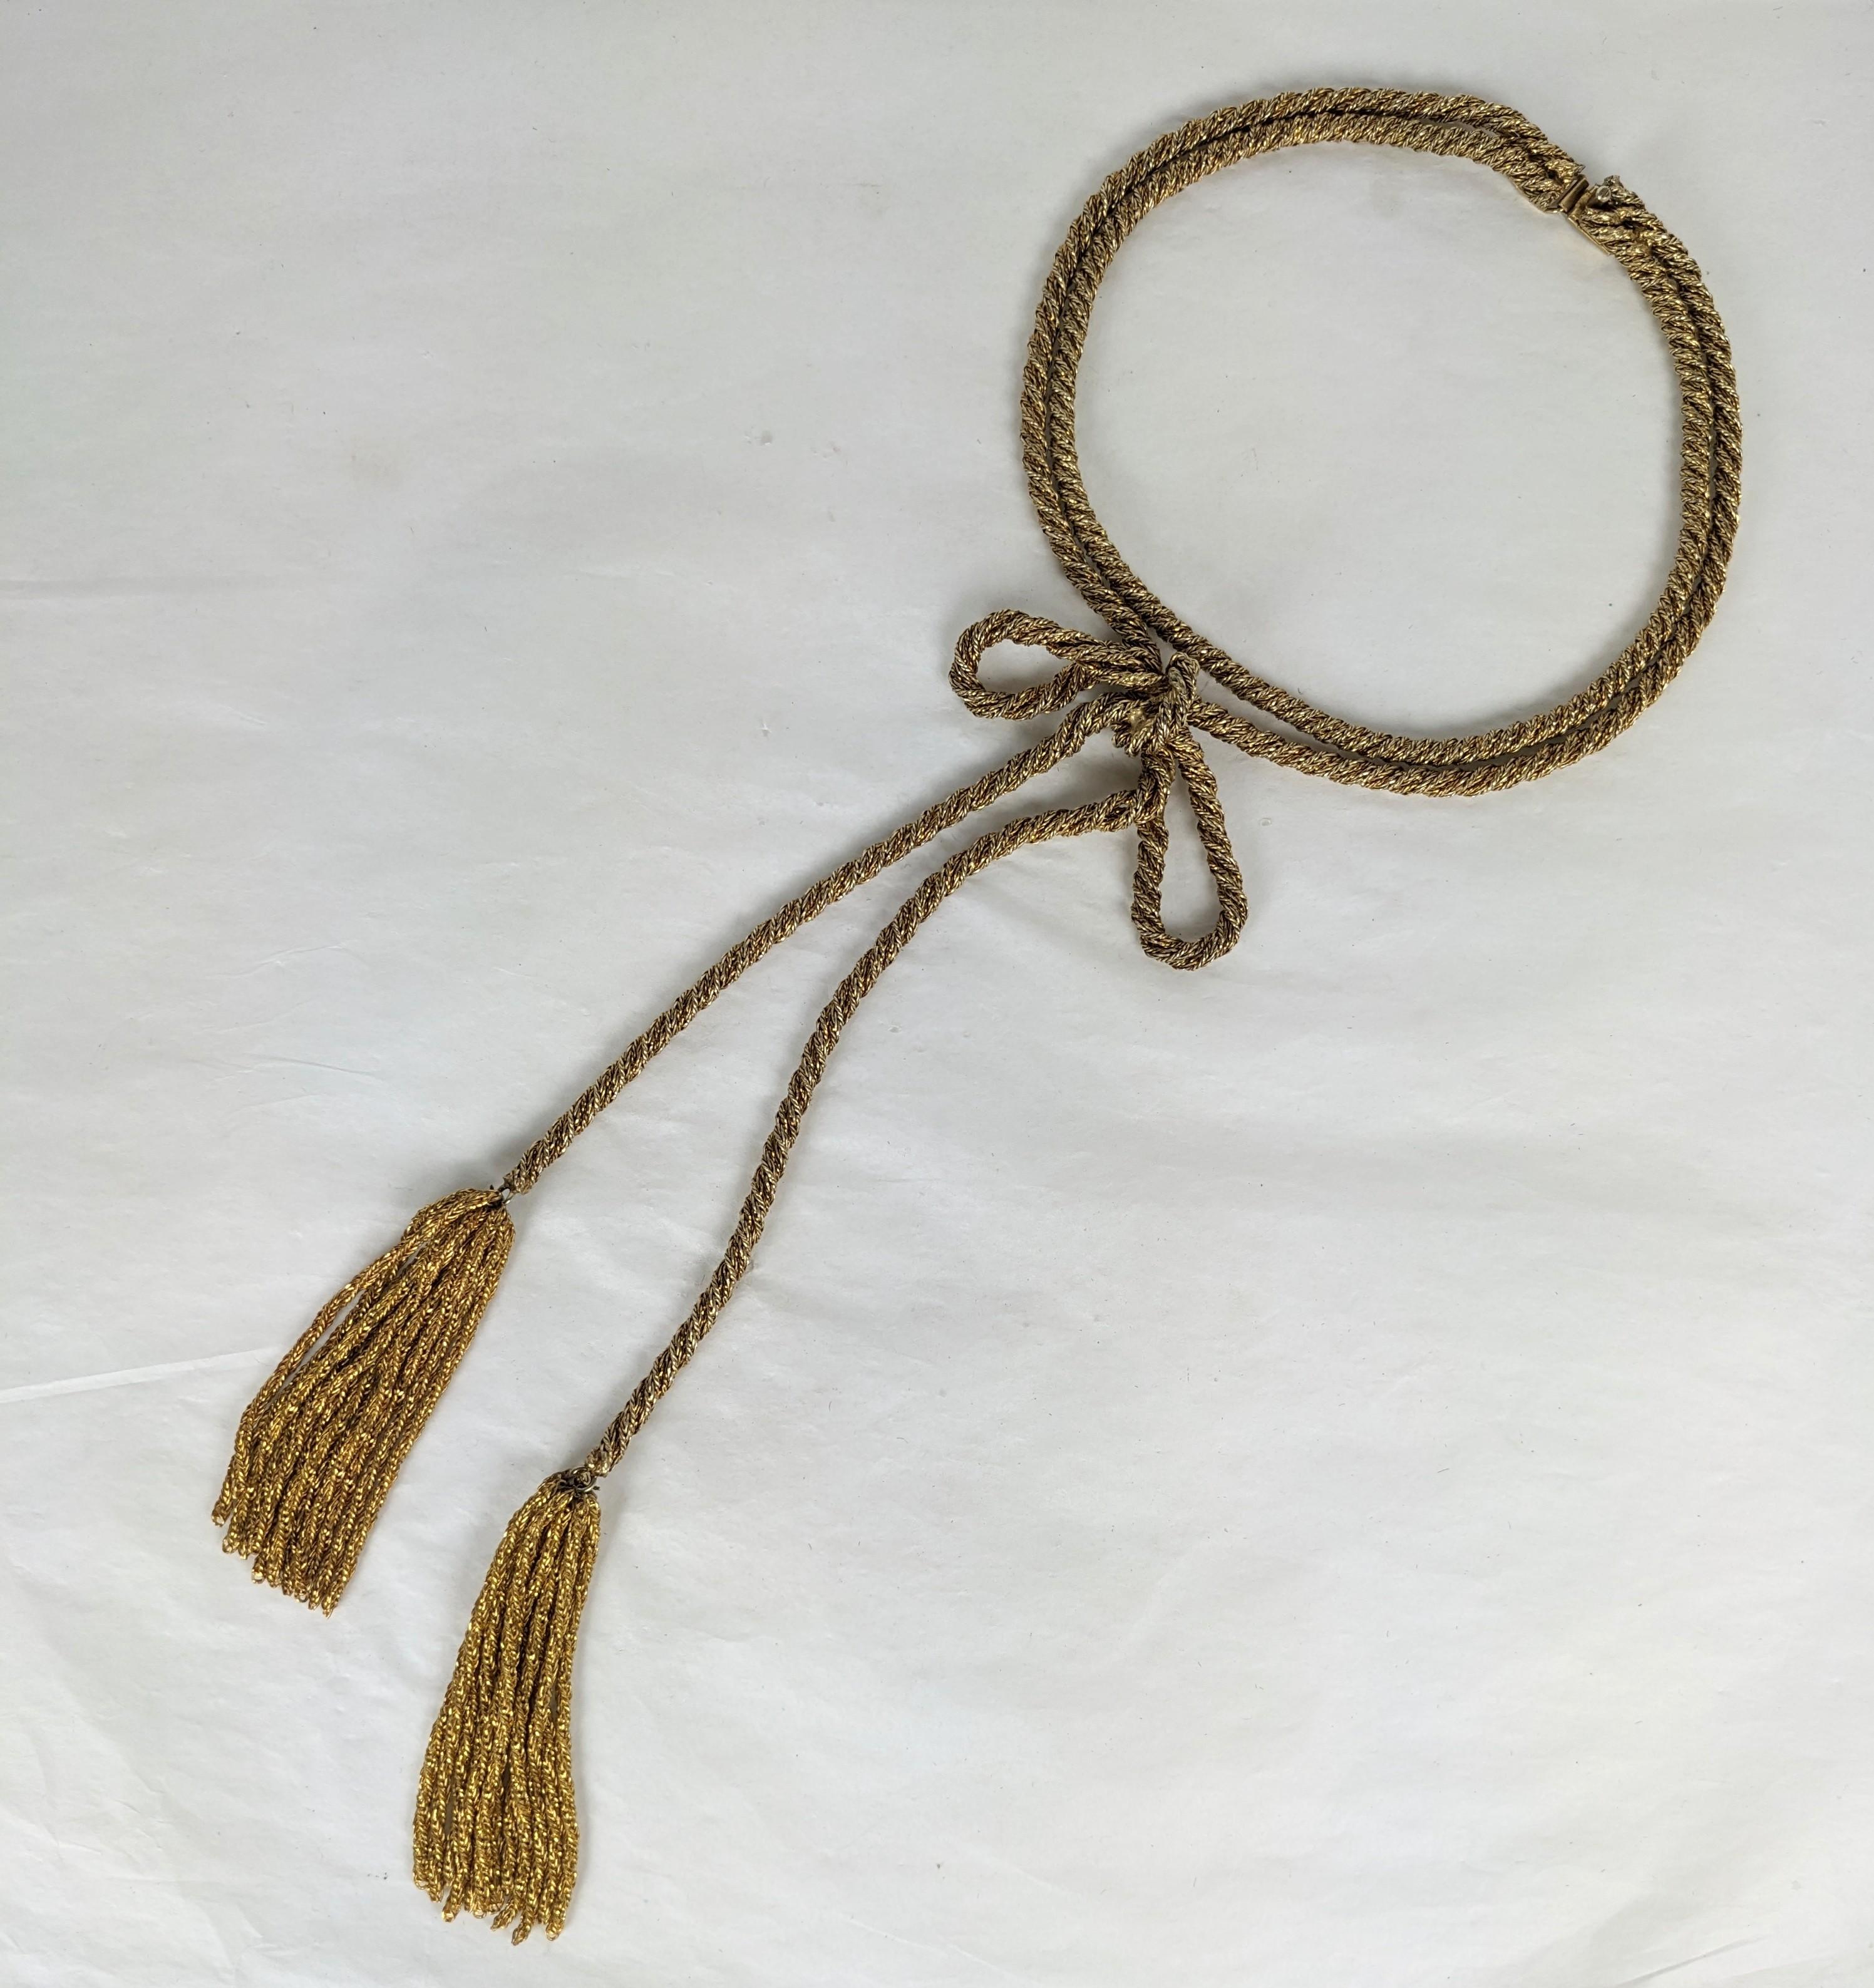 Ungewöhnliche französische vergoldete Seilschleifen-Halskette aus den 1950er Jahren. Super komplizierte Konstruktion mit 2 Halsketten an einem Verschluss. Die eine sitzt hoch am Hals, die andere hat eine Schleife mit selbstkettigen Quasten. Jede